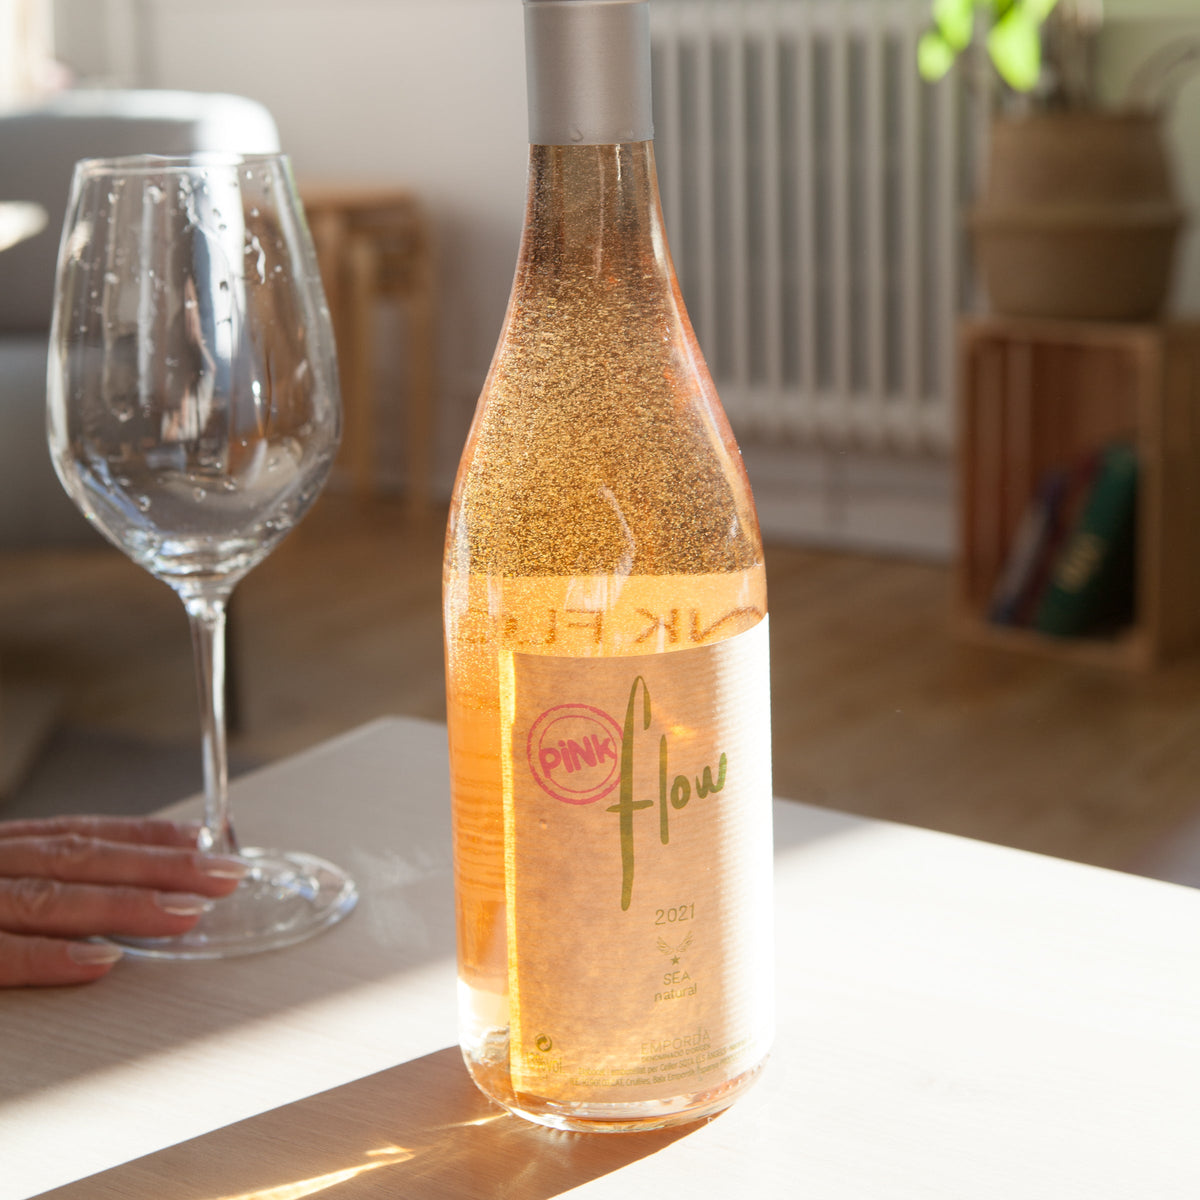 Pink Flow 2021 - Rosé - Domaine Sota Els Angels - Le vin dans les voiles